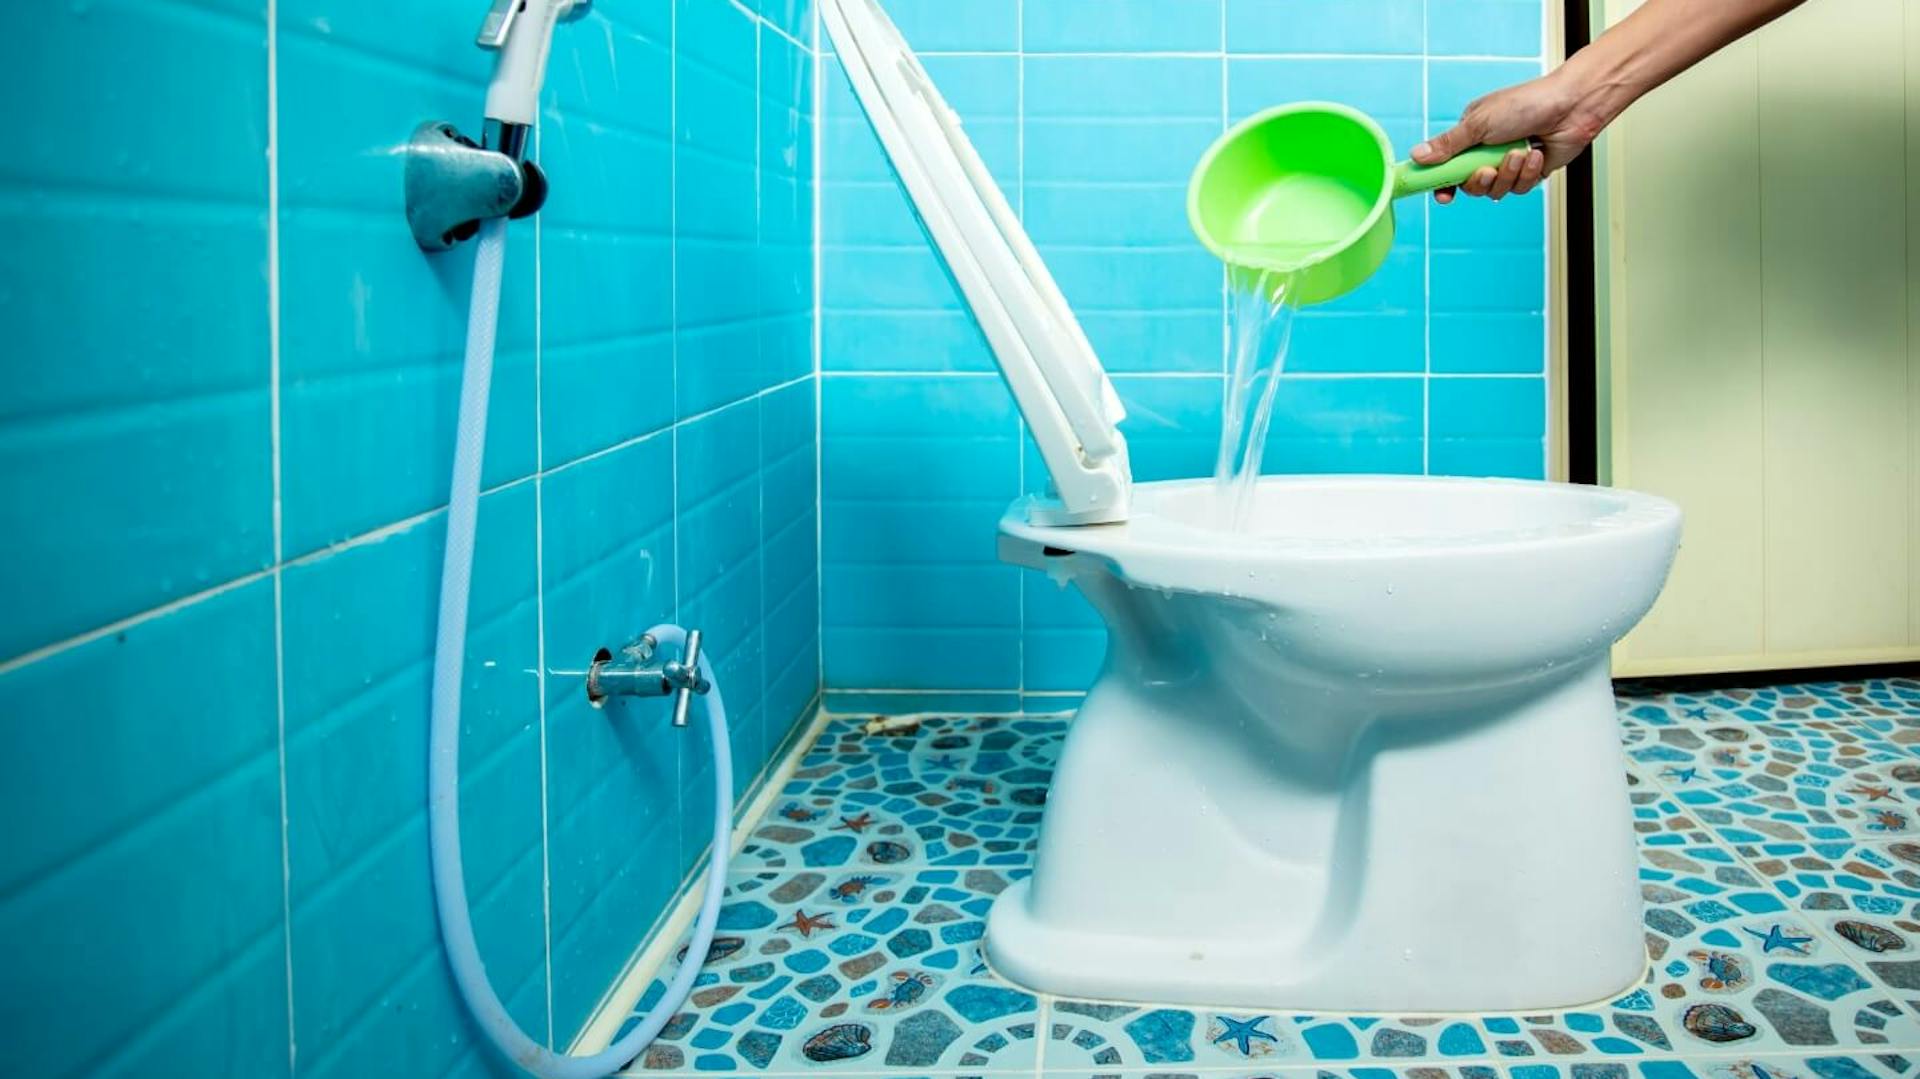 Una persona versa l’acqua da un contenitore verde nella WC.